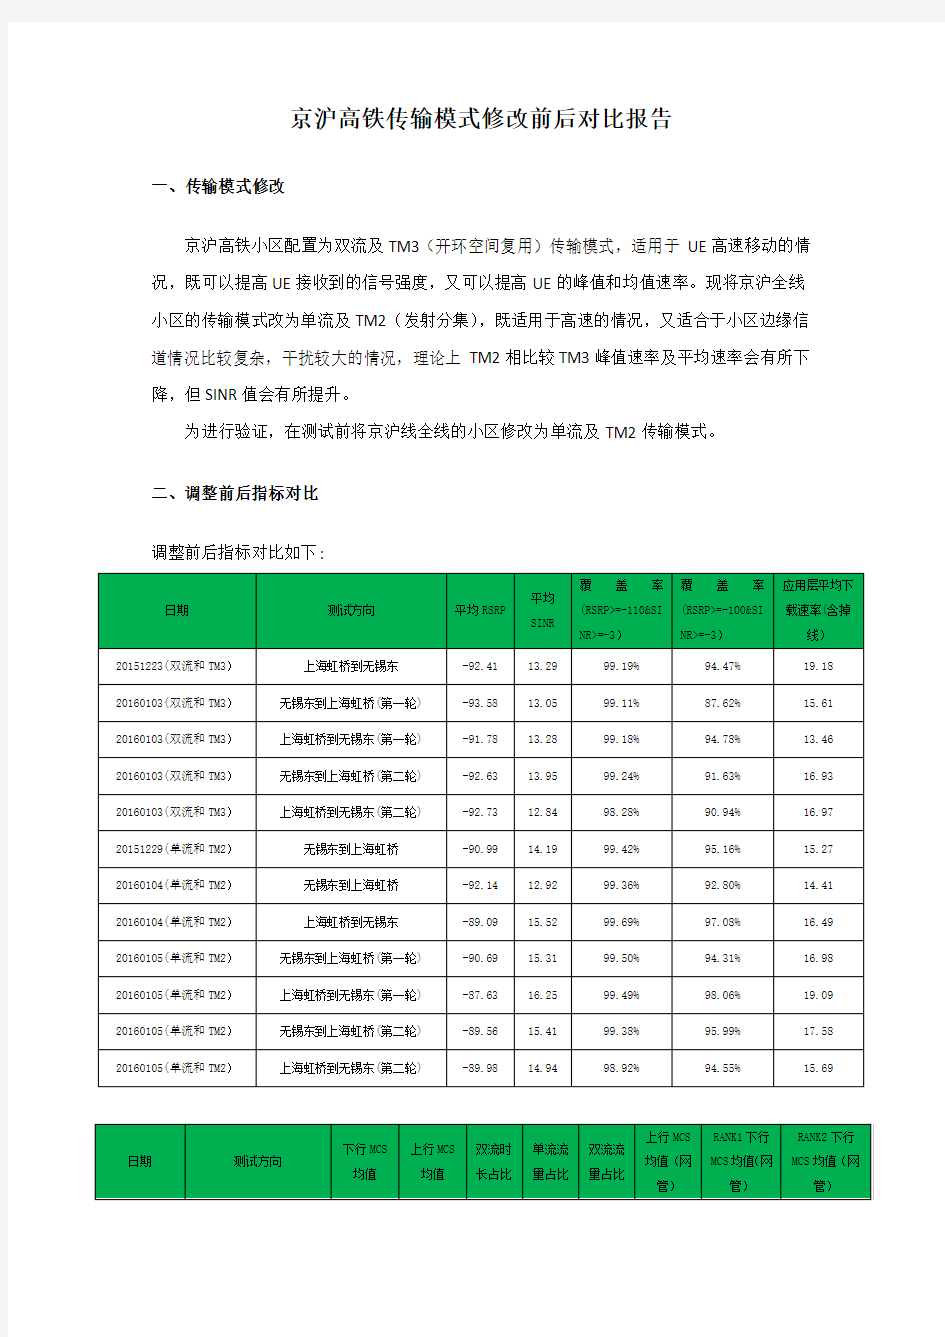 京沪高铁传输模式修改前后对比报告(更新)